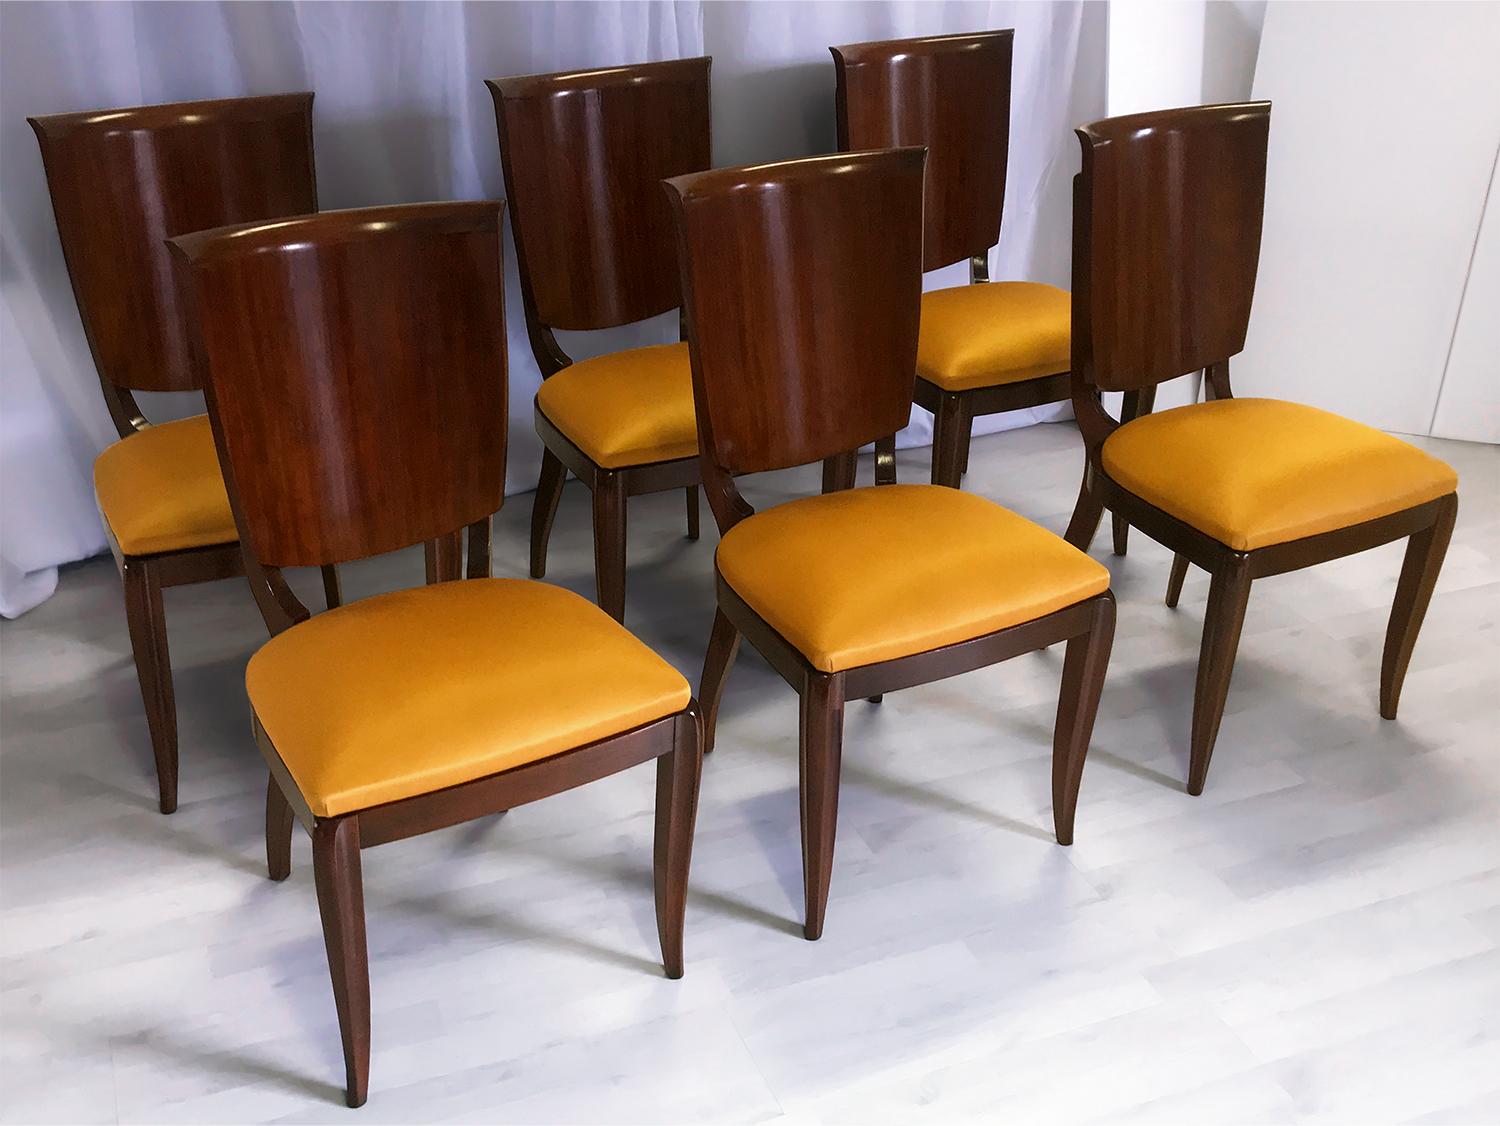 Elegante Linien und solide Strukturen für dieses beeindruckende Set aus sechs Esszimmerstühlen, die von Vittorio Dassi in den 1950er Jahren entworfen wurden und sofort einsatzbereit sind.

Die Holzoberflächen wurden vor kurzem mit Schellack